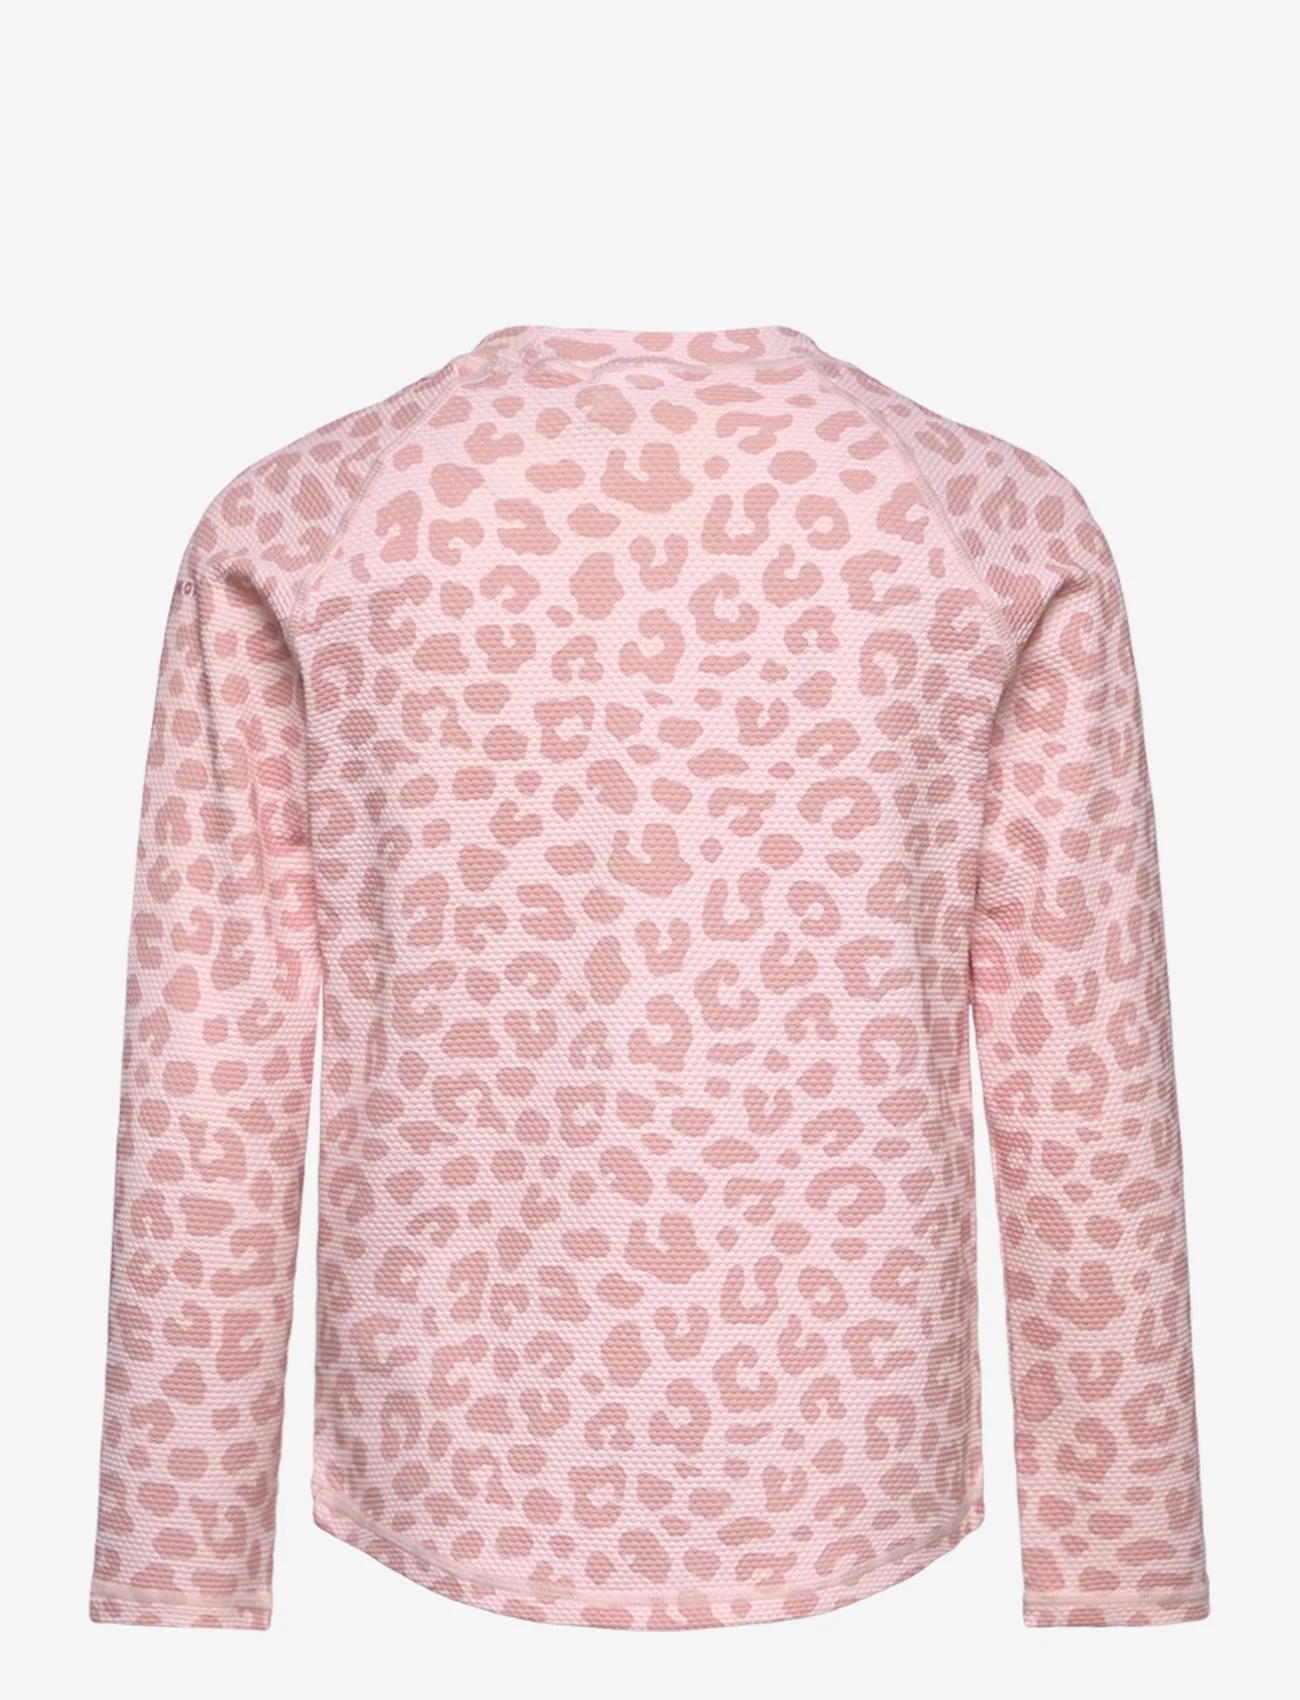 Geggamoja - UV Long-sleeve sweater - gode sommertilbud - pink leo - 1